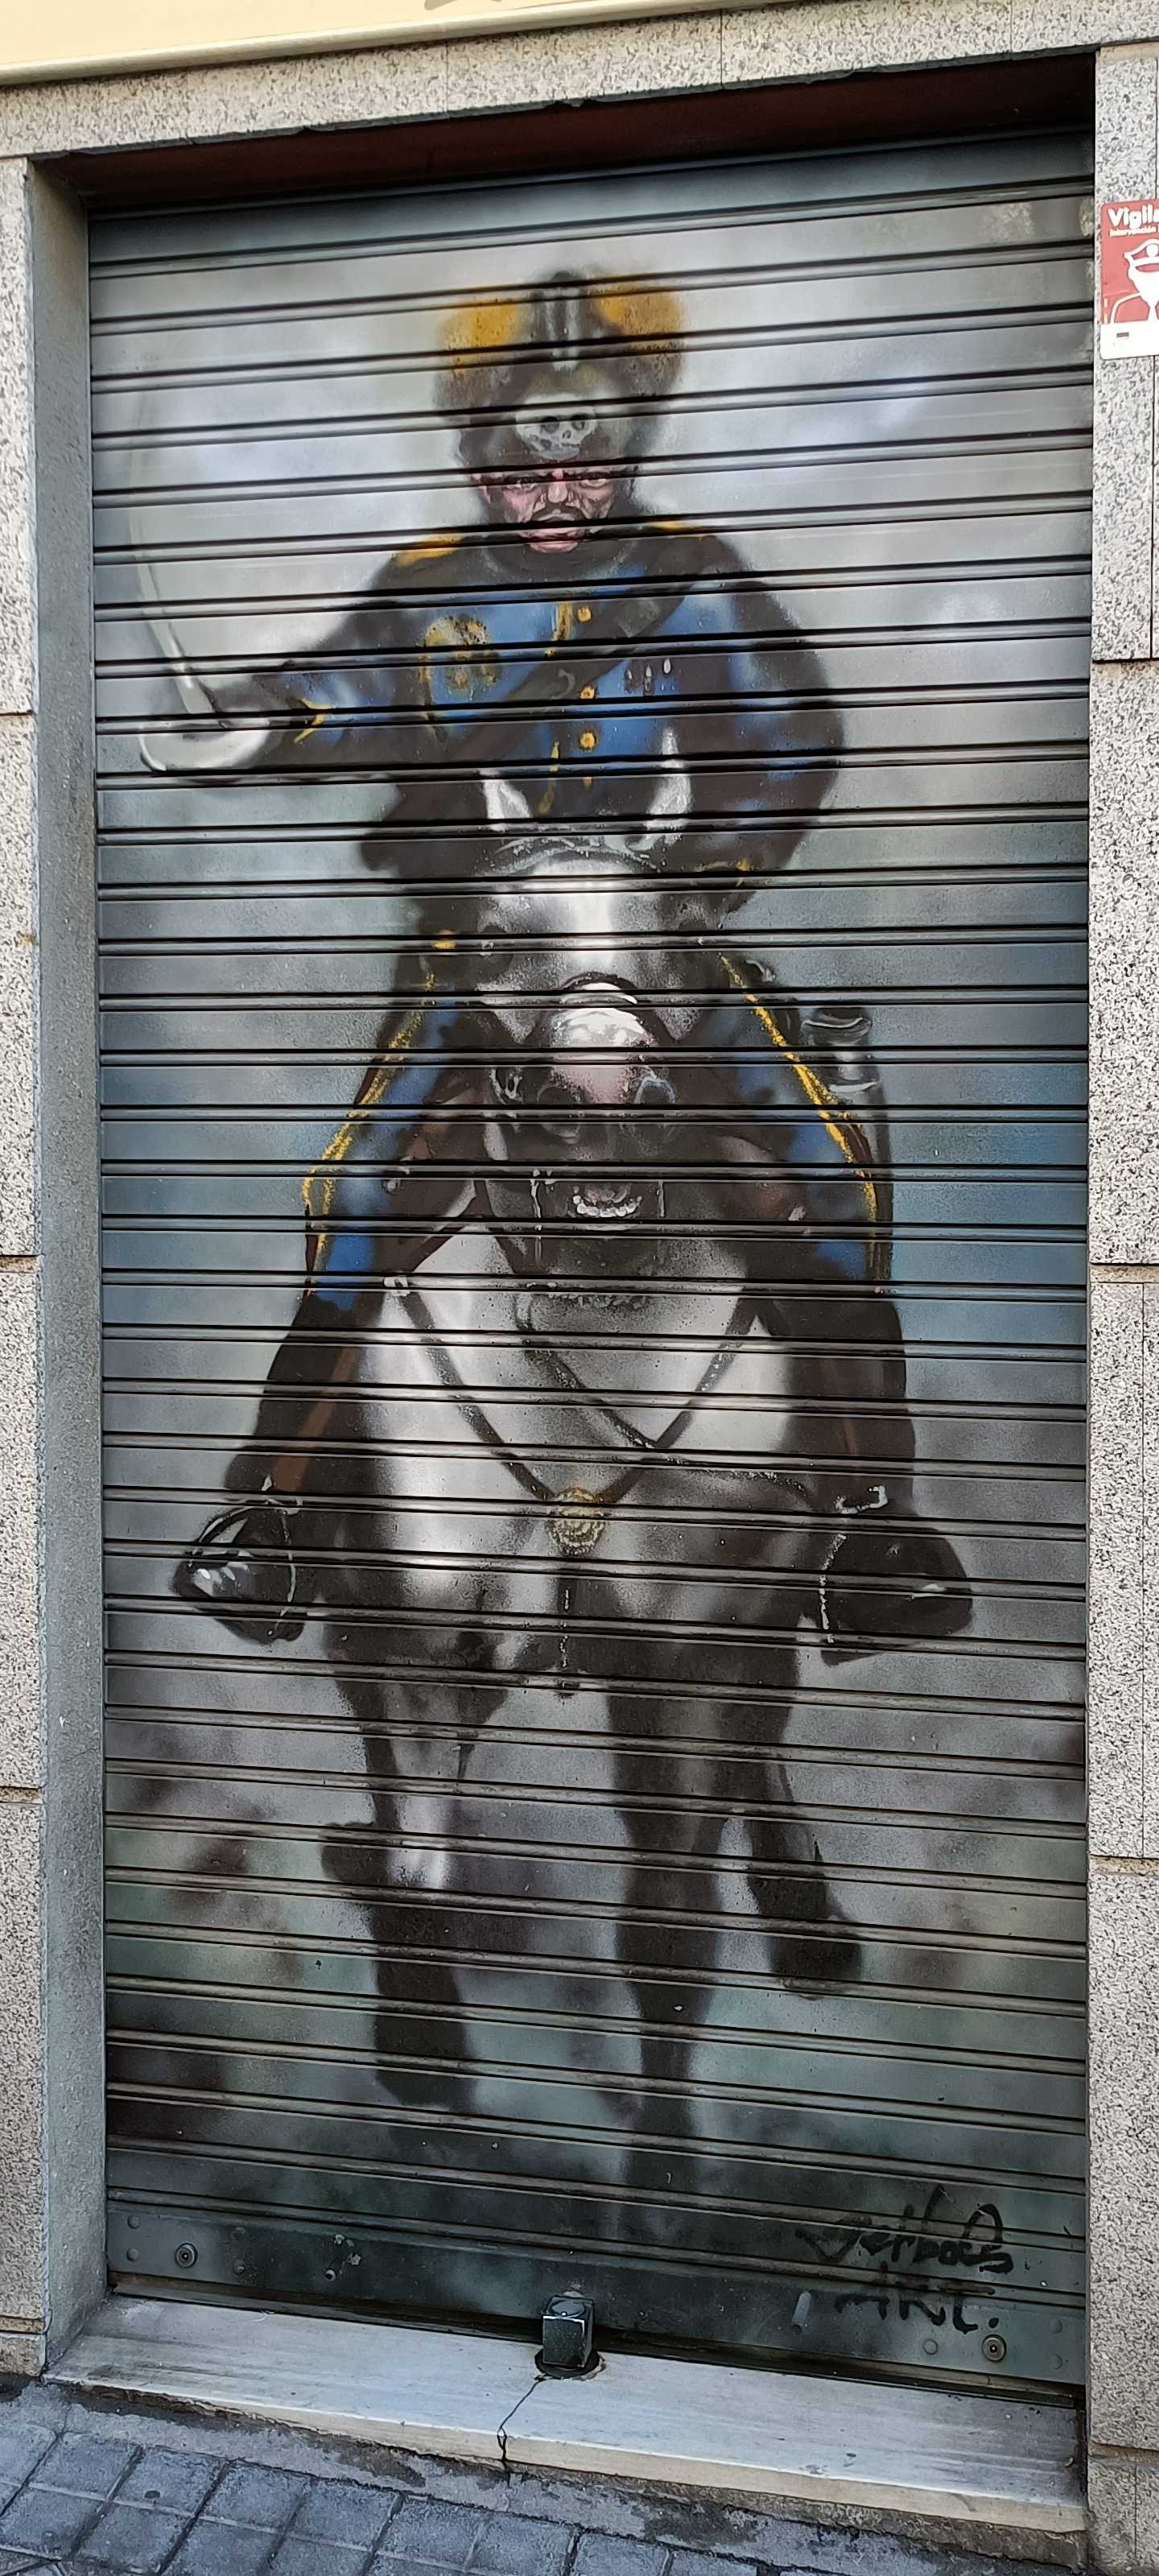 Graffiti 6764  capturé par Rabot à Madrid Spain